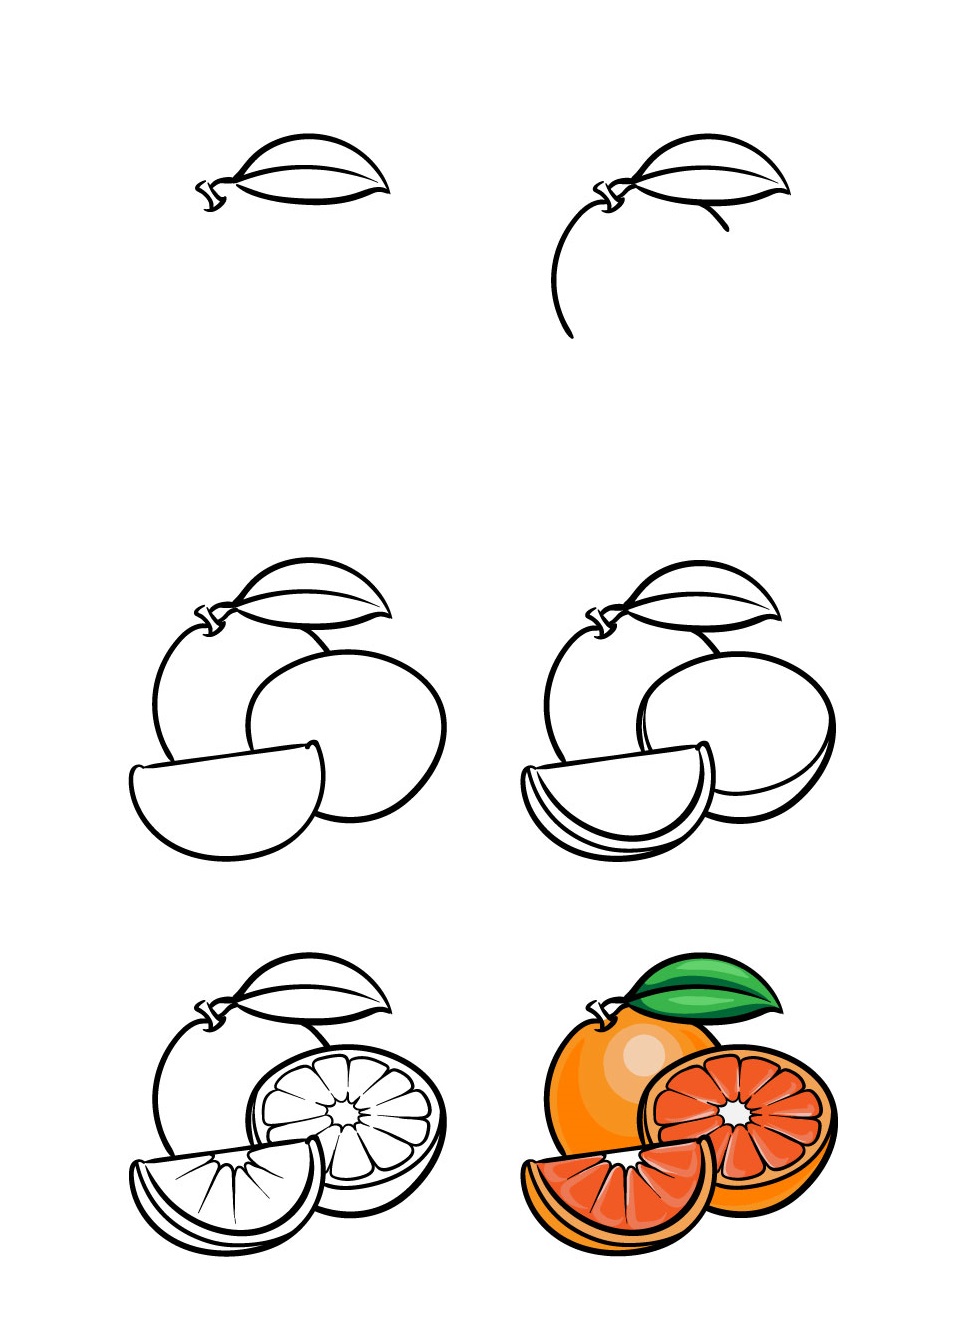 Bí quyết cách vẽ hoa quả dễ nhất cho người mới bắt đầu